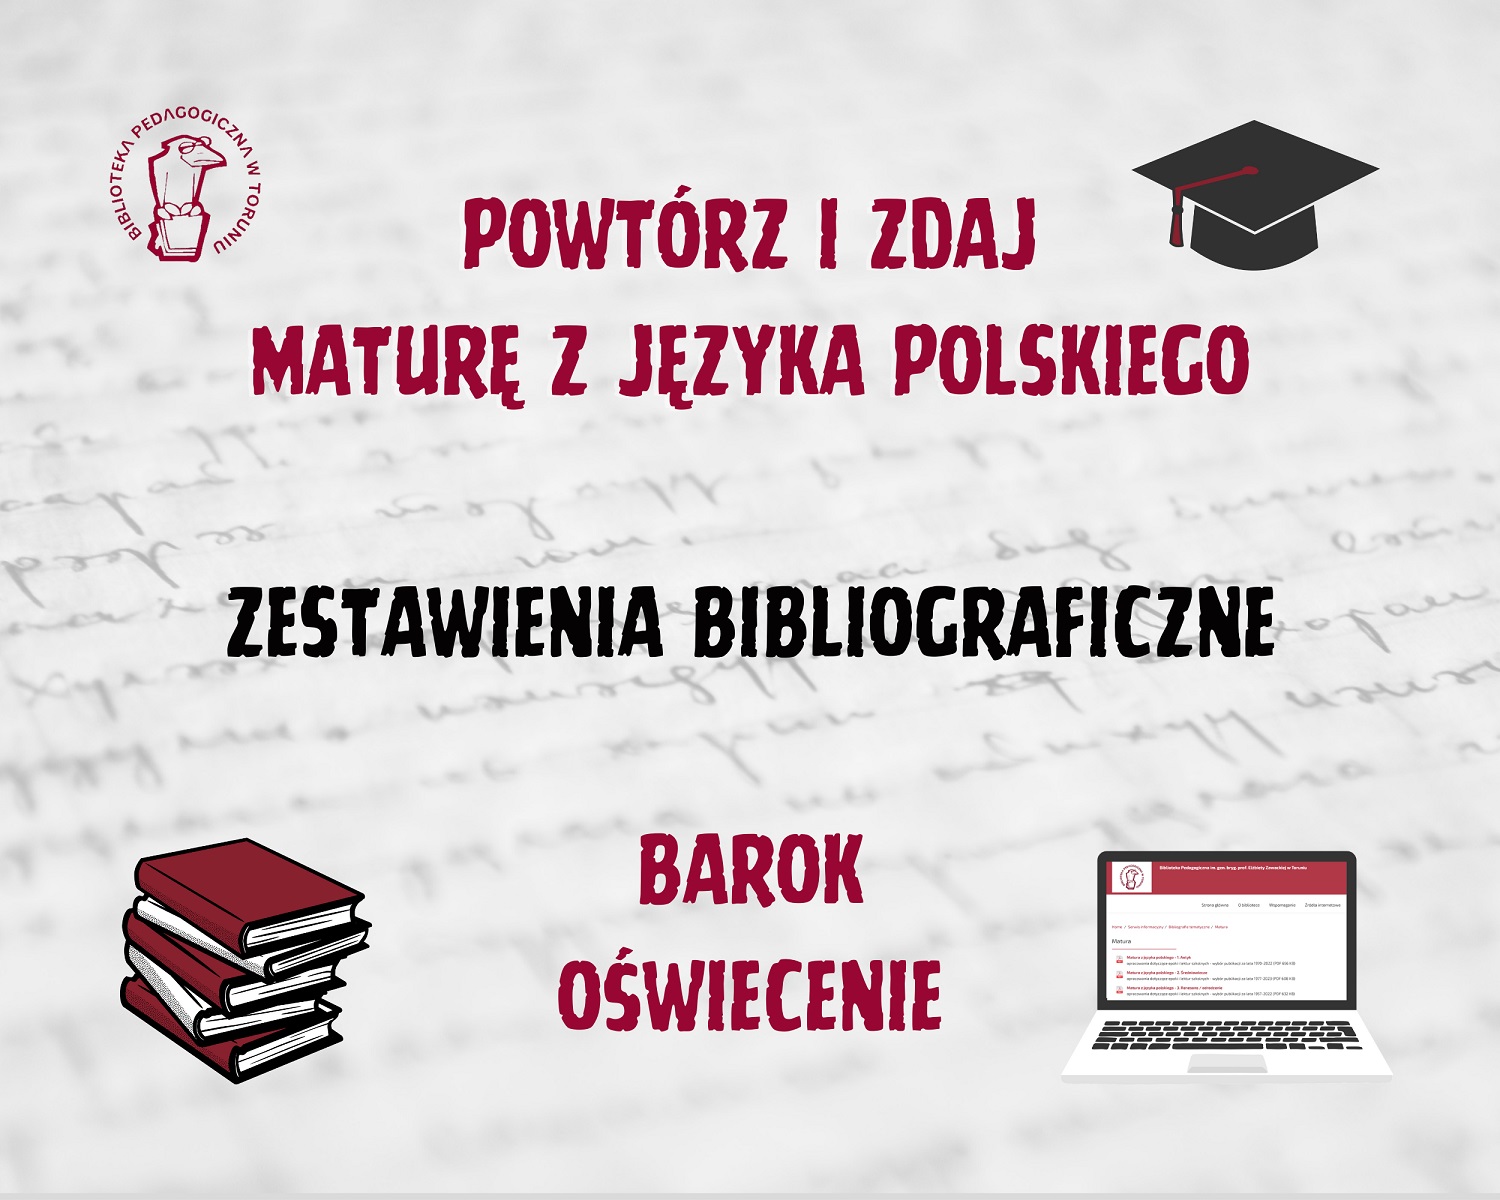 Powtórz i zdaja maturę z języka polskiego - zestawienia bibliograficzne: barok i oświecenie.